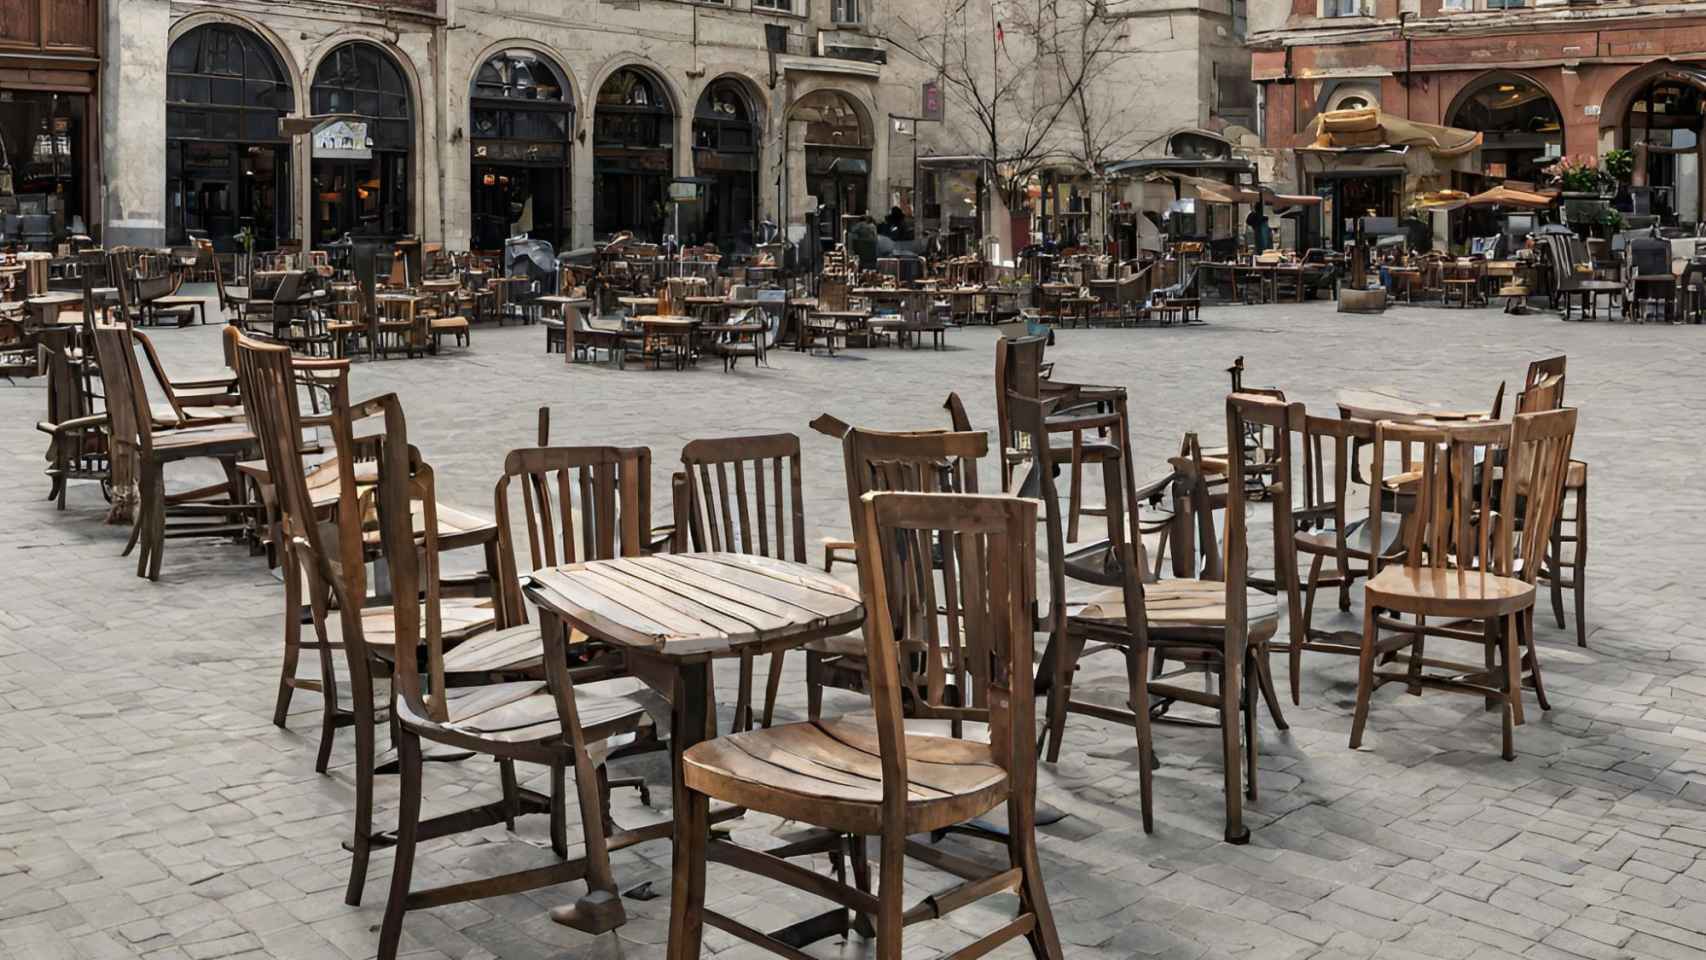 Imagen de la plaza de un pueblo repleta de sillas generado con IA